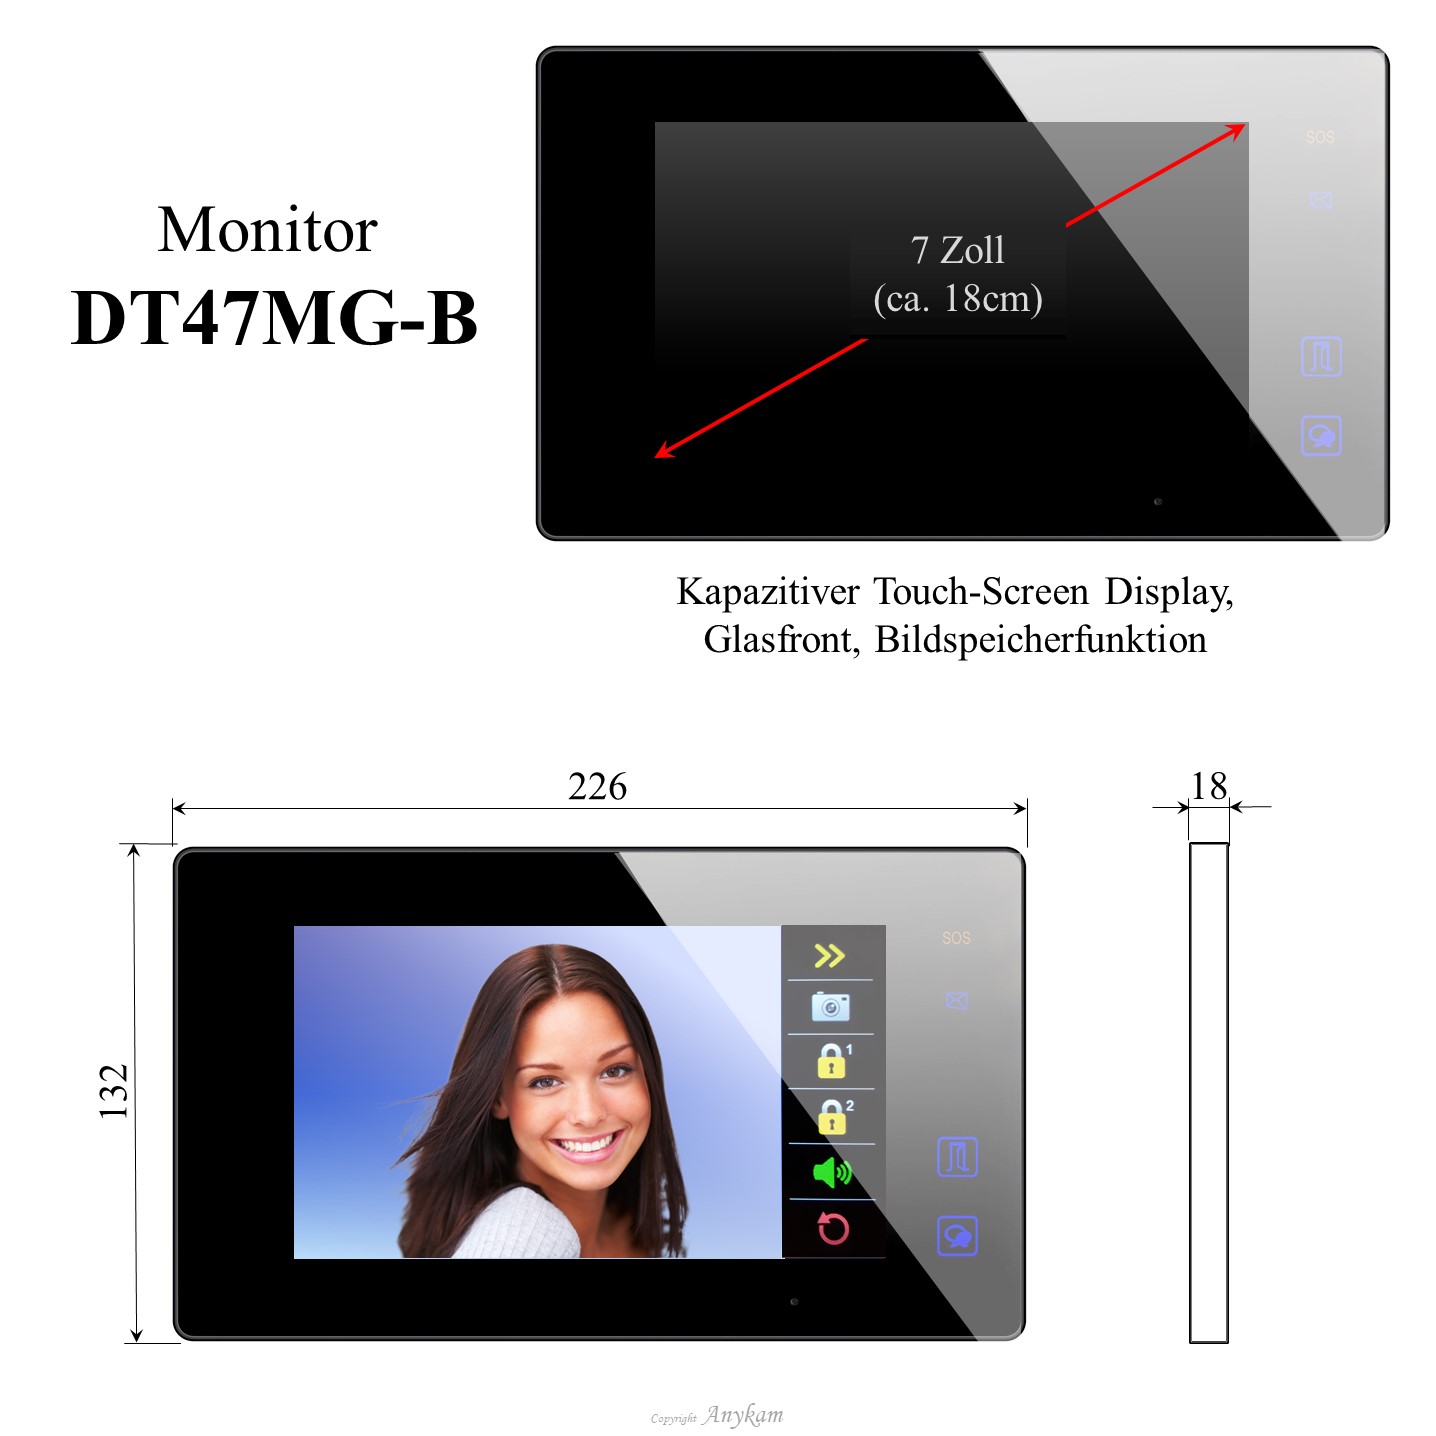 Monitor DT47MG-B, Innenstation der Videosprechanlage mit 2Draht Technik